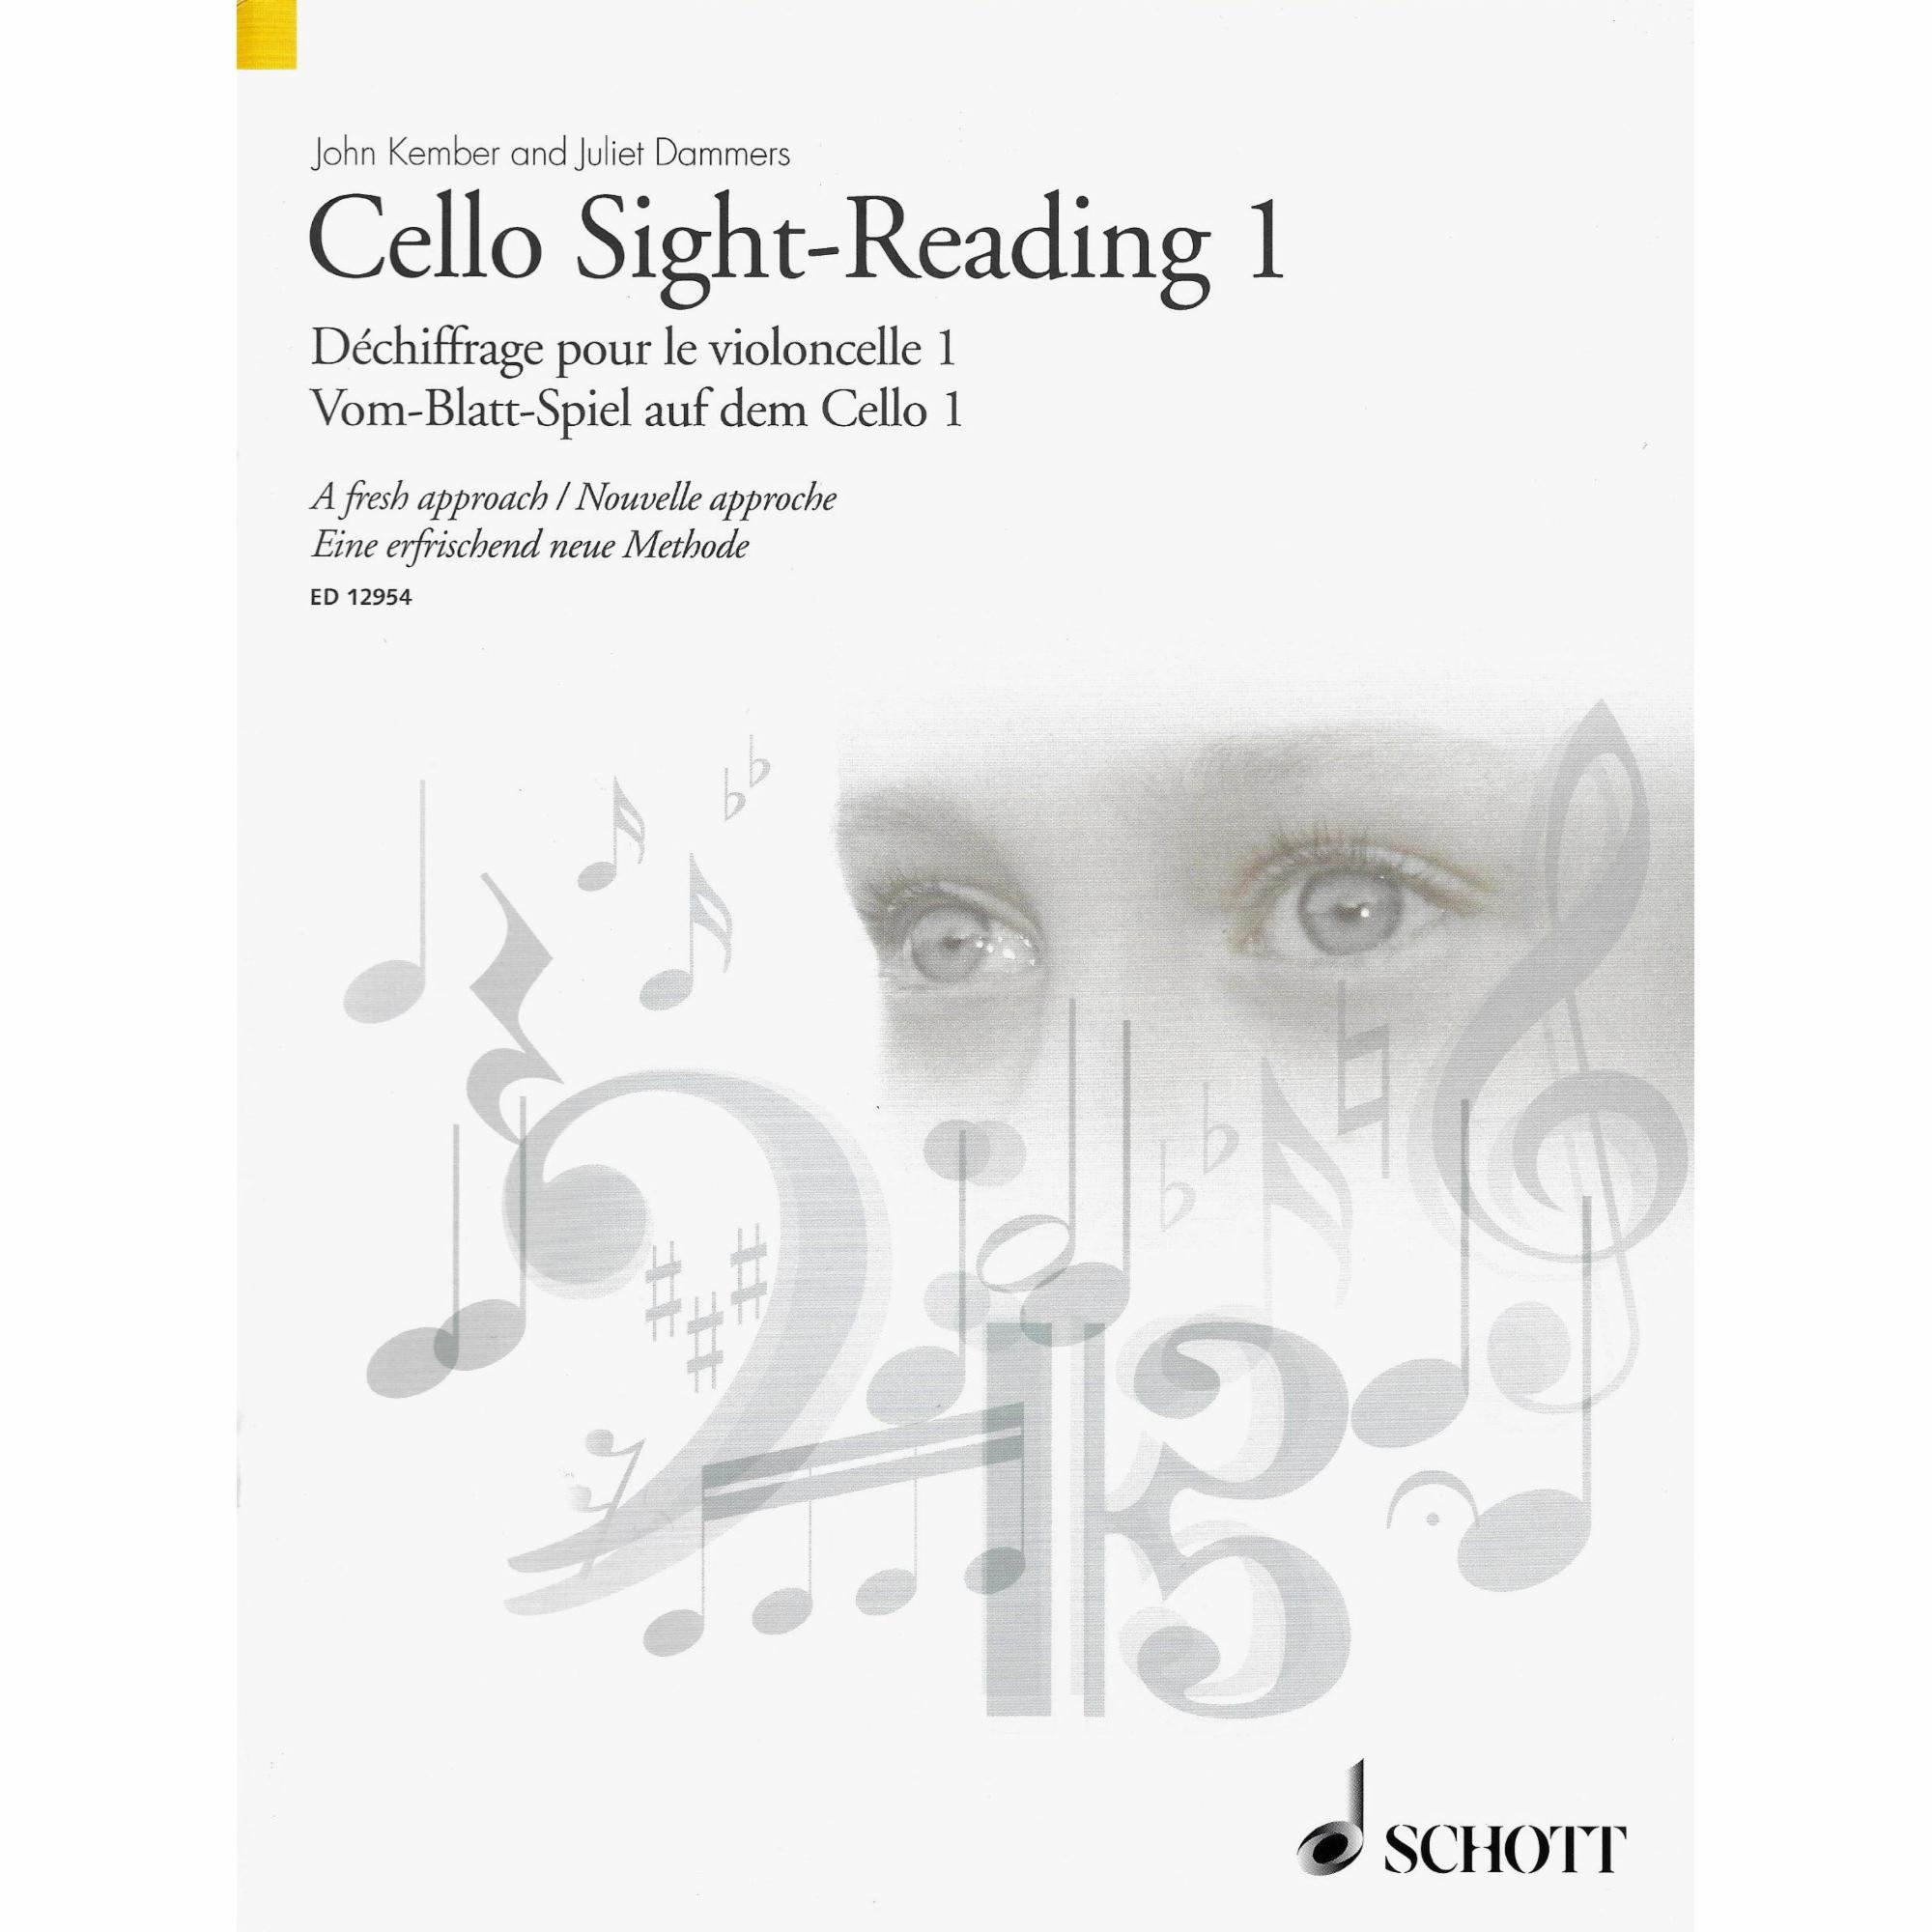 Cello Sight-Reading